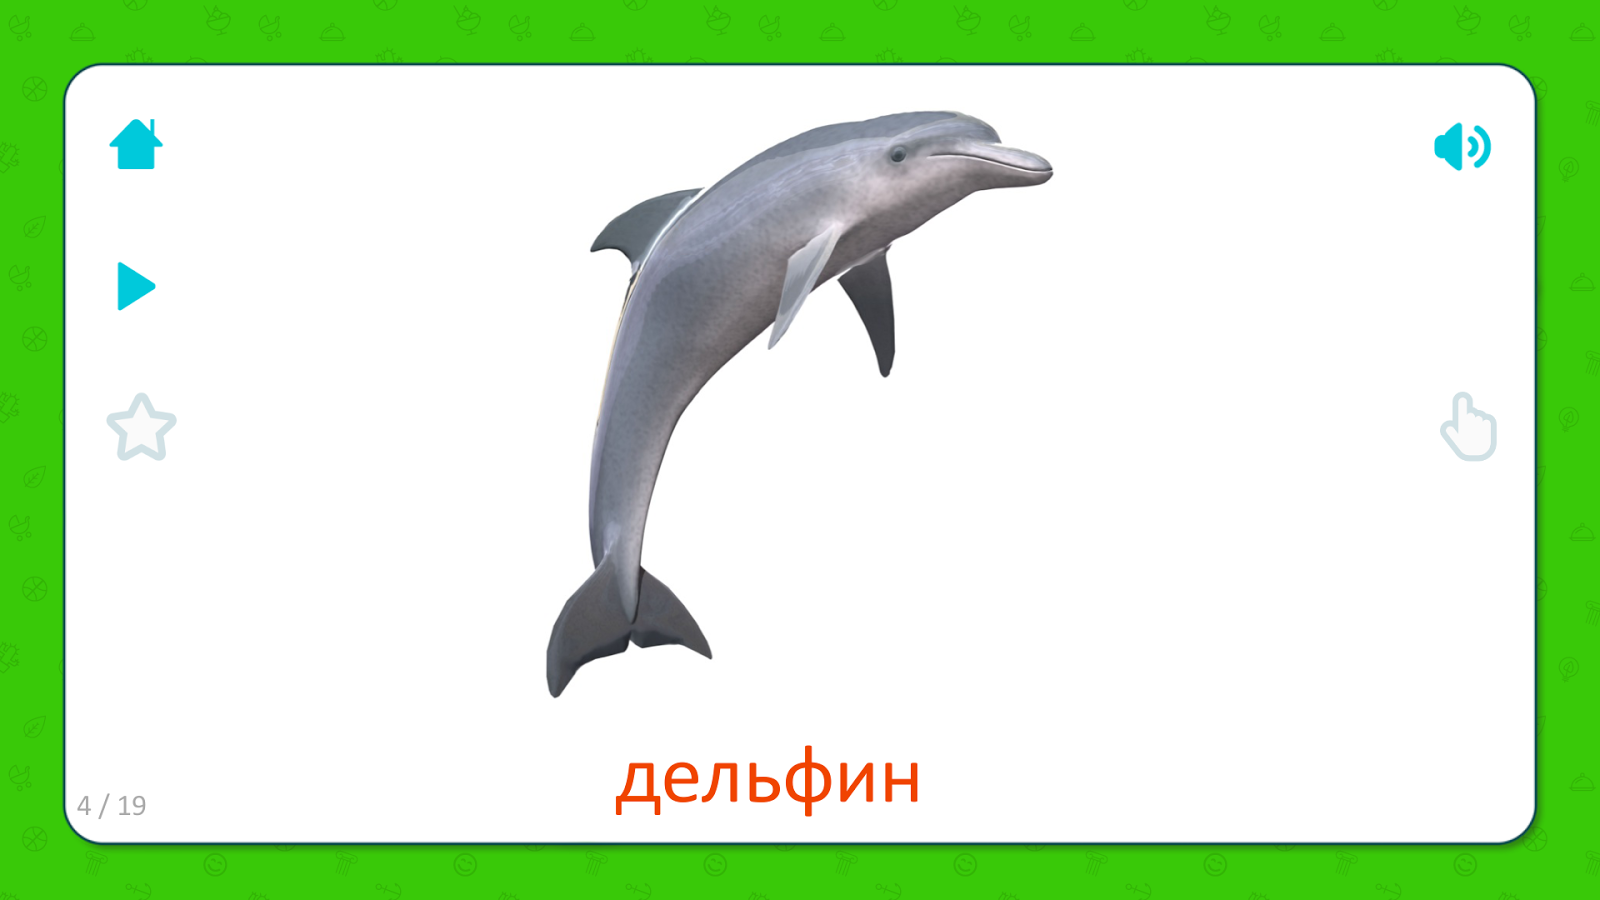 Английский про дельфинов. Дельфин карточки Домана. Дельфин карточка для детей. Морские животные для детей Дельфин. Морские животные карточки для детей.